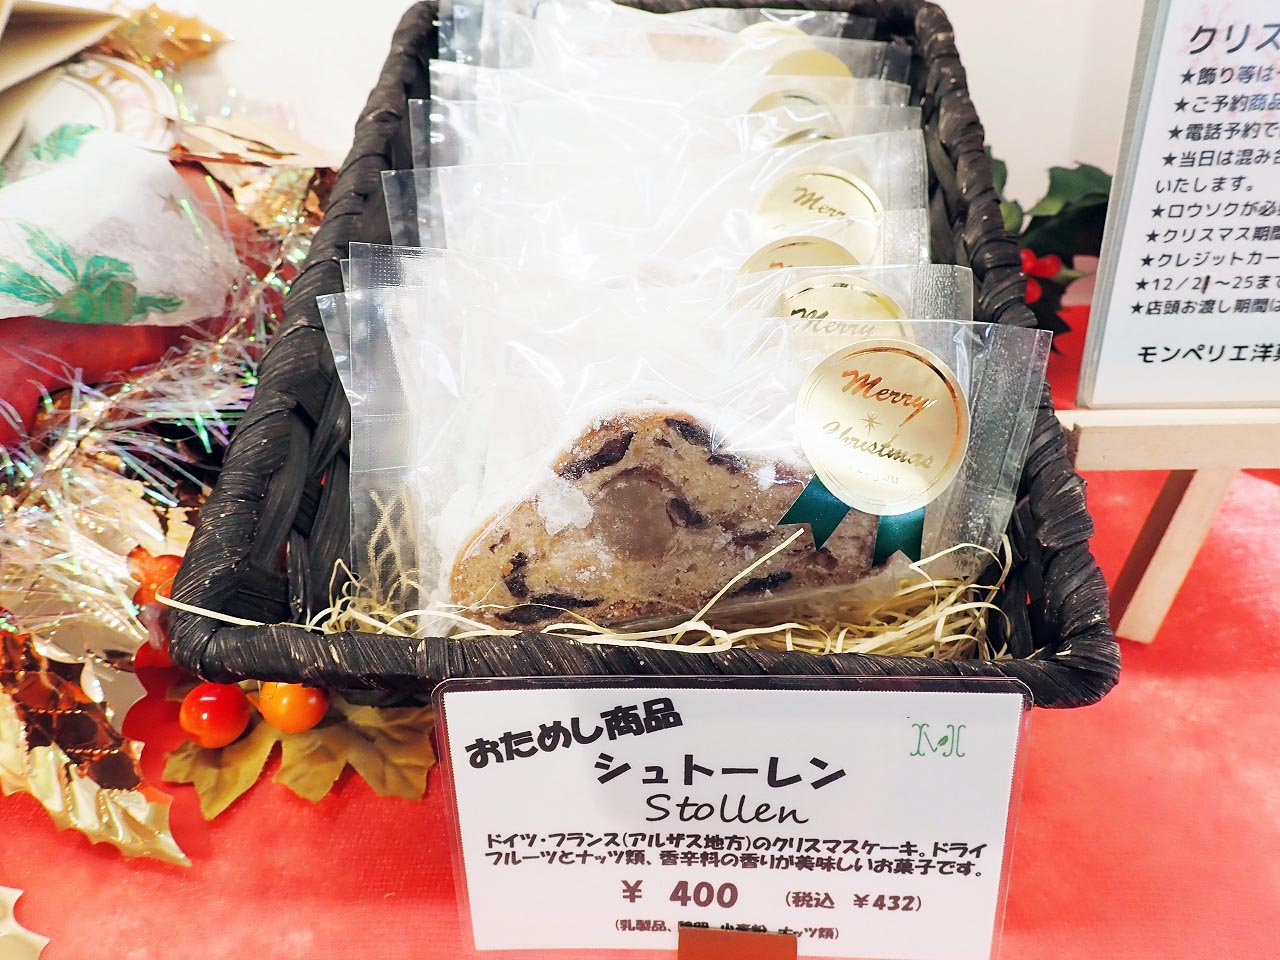 川越の美味しいケーキのお店『モンペリエ洋菓子店』